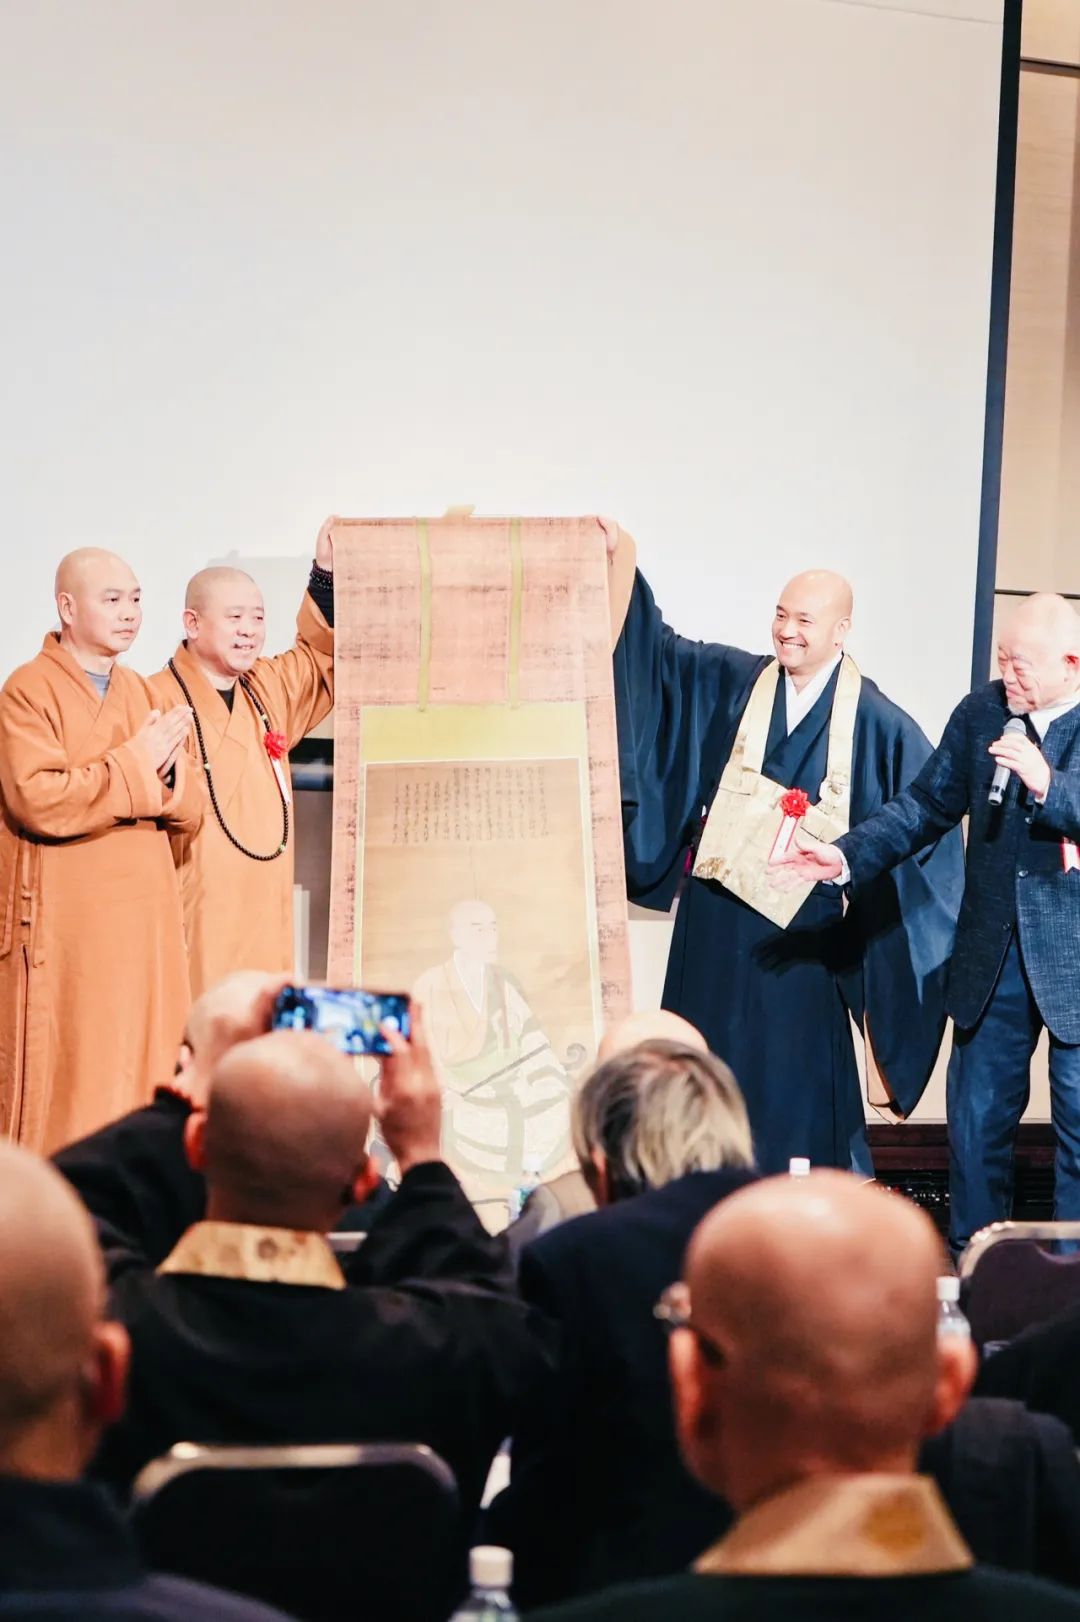 七百余载临济棒 兰香三味续两邦——— 兰溪道隆禅师来日传法纪念研讨会在京都召开